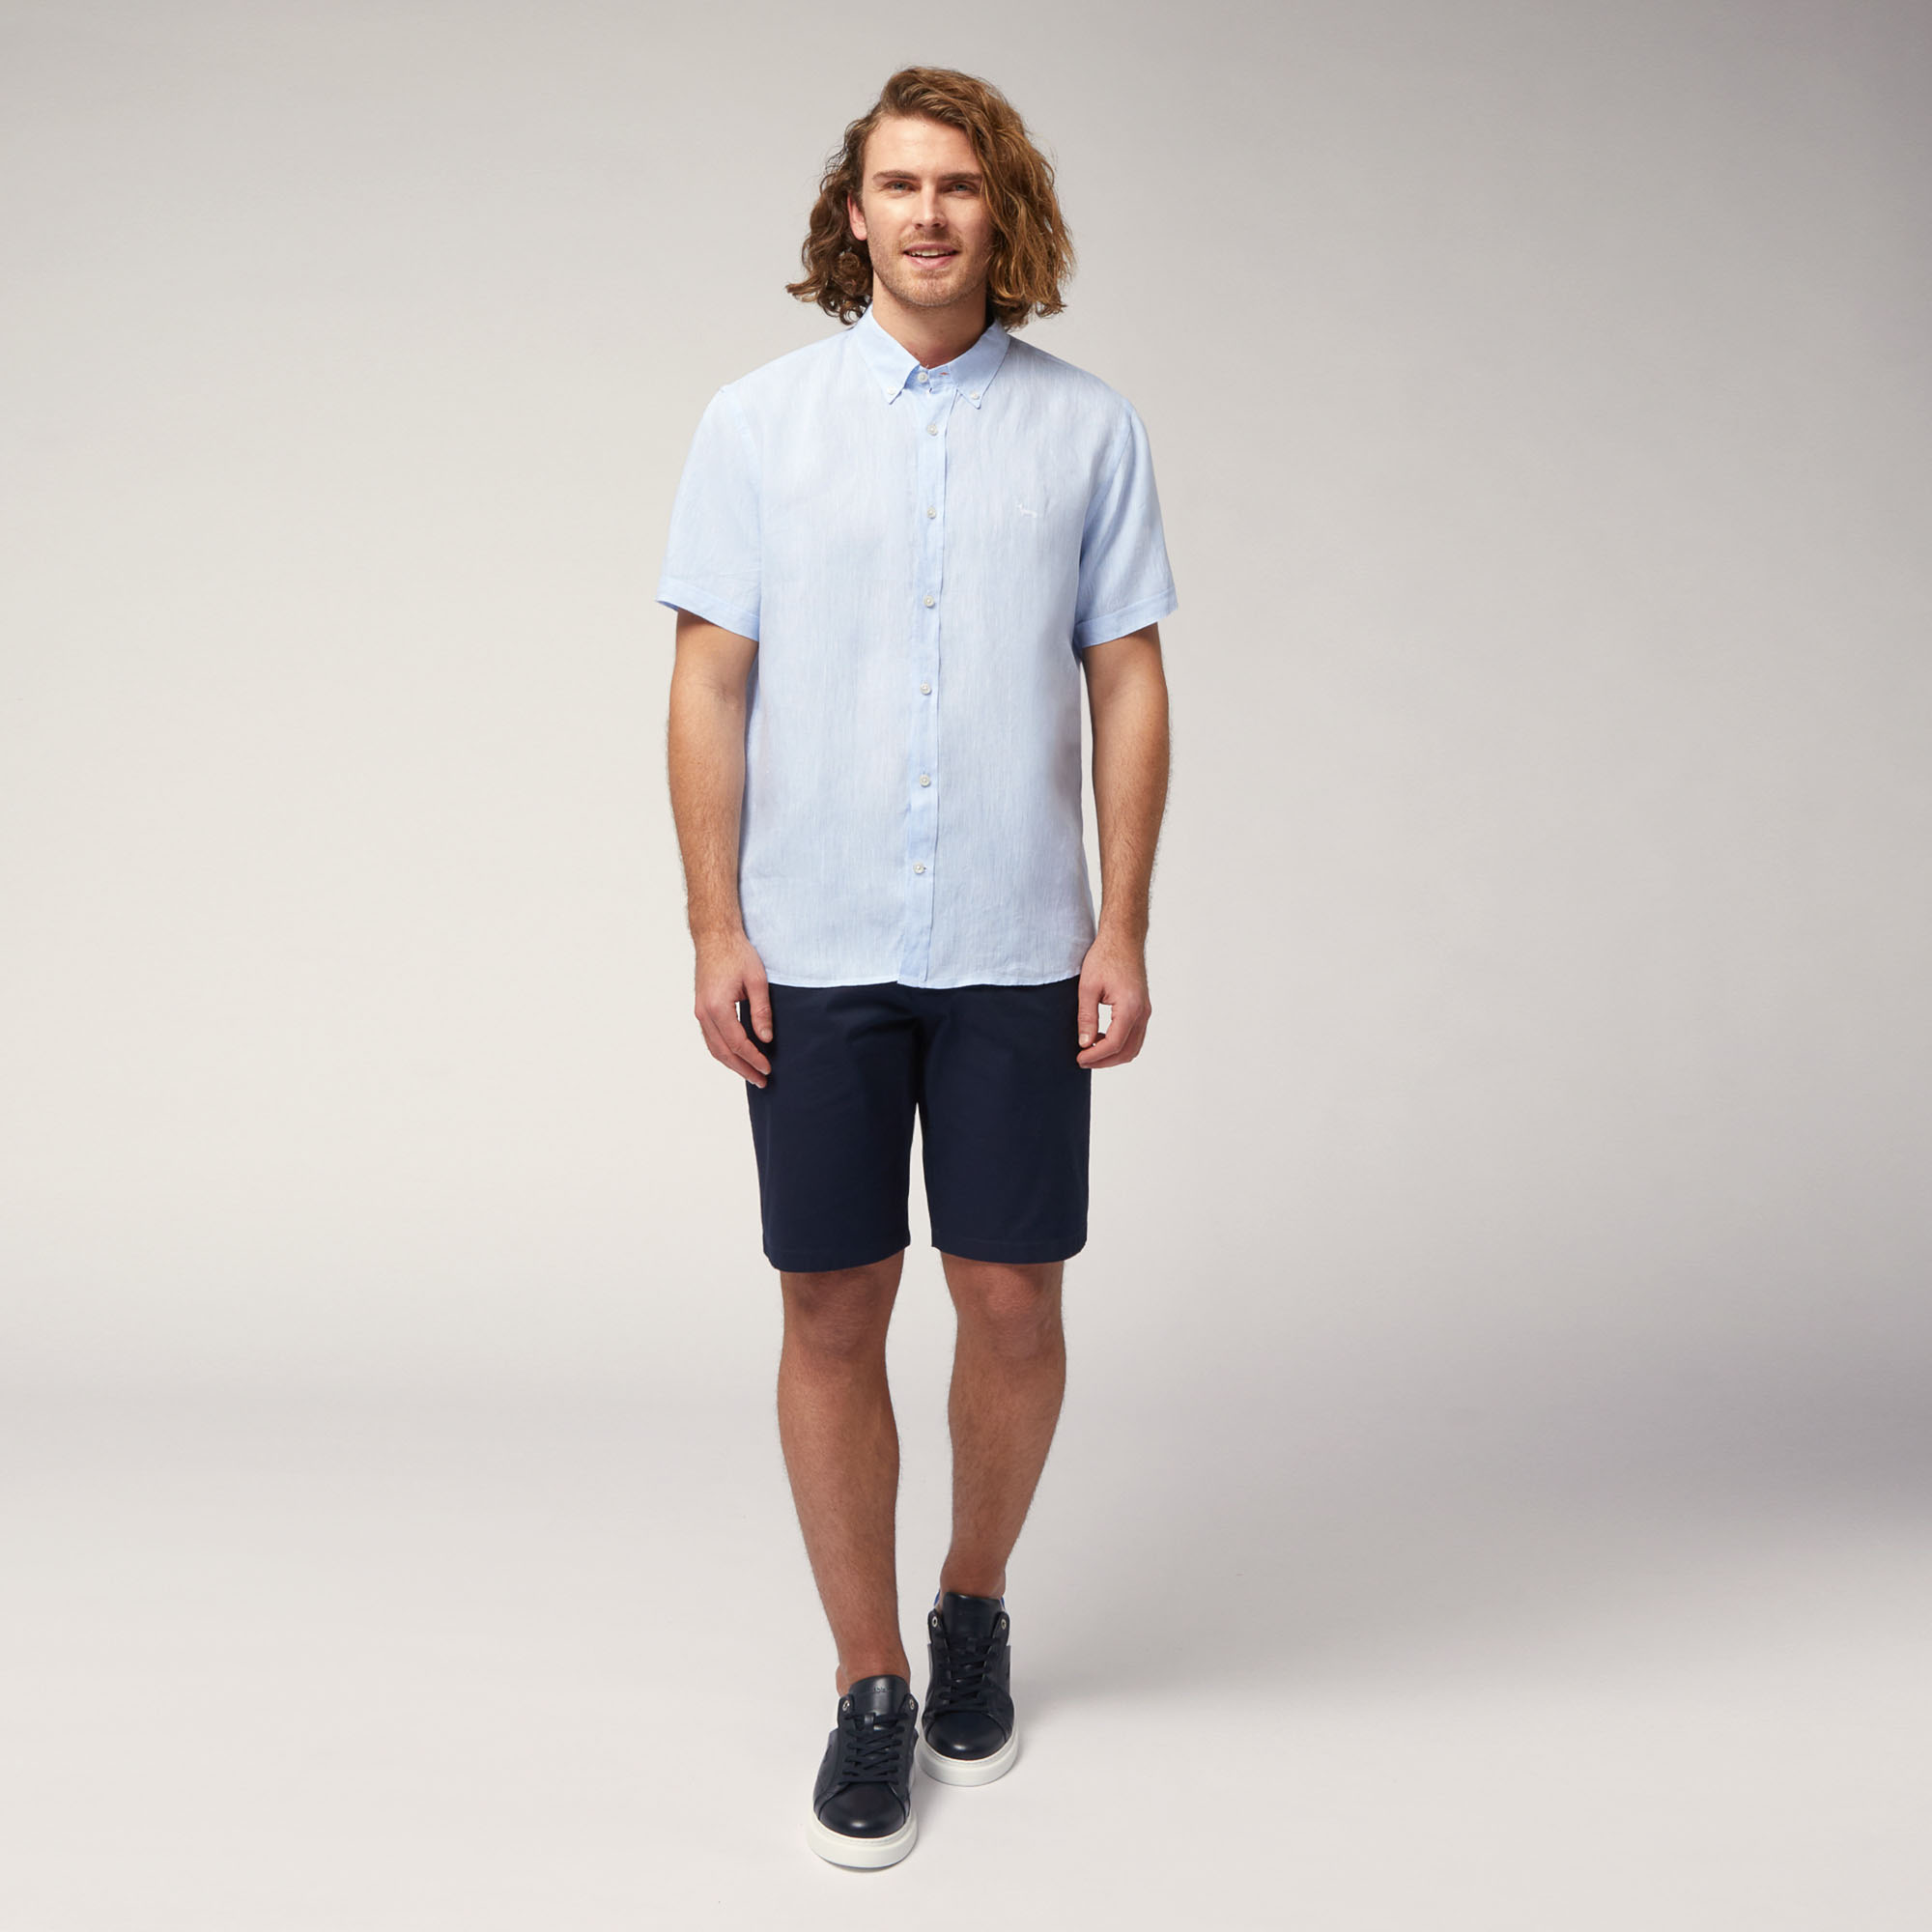 Linen Short-Sleeved Shirt, Sky Blue, large image number 3